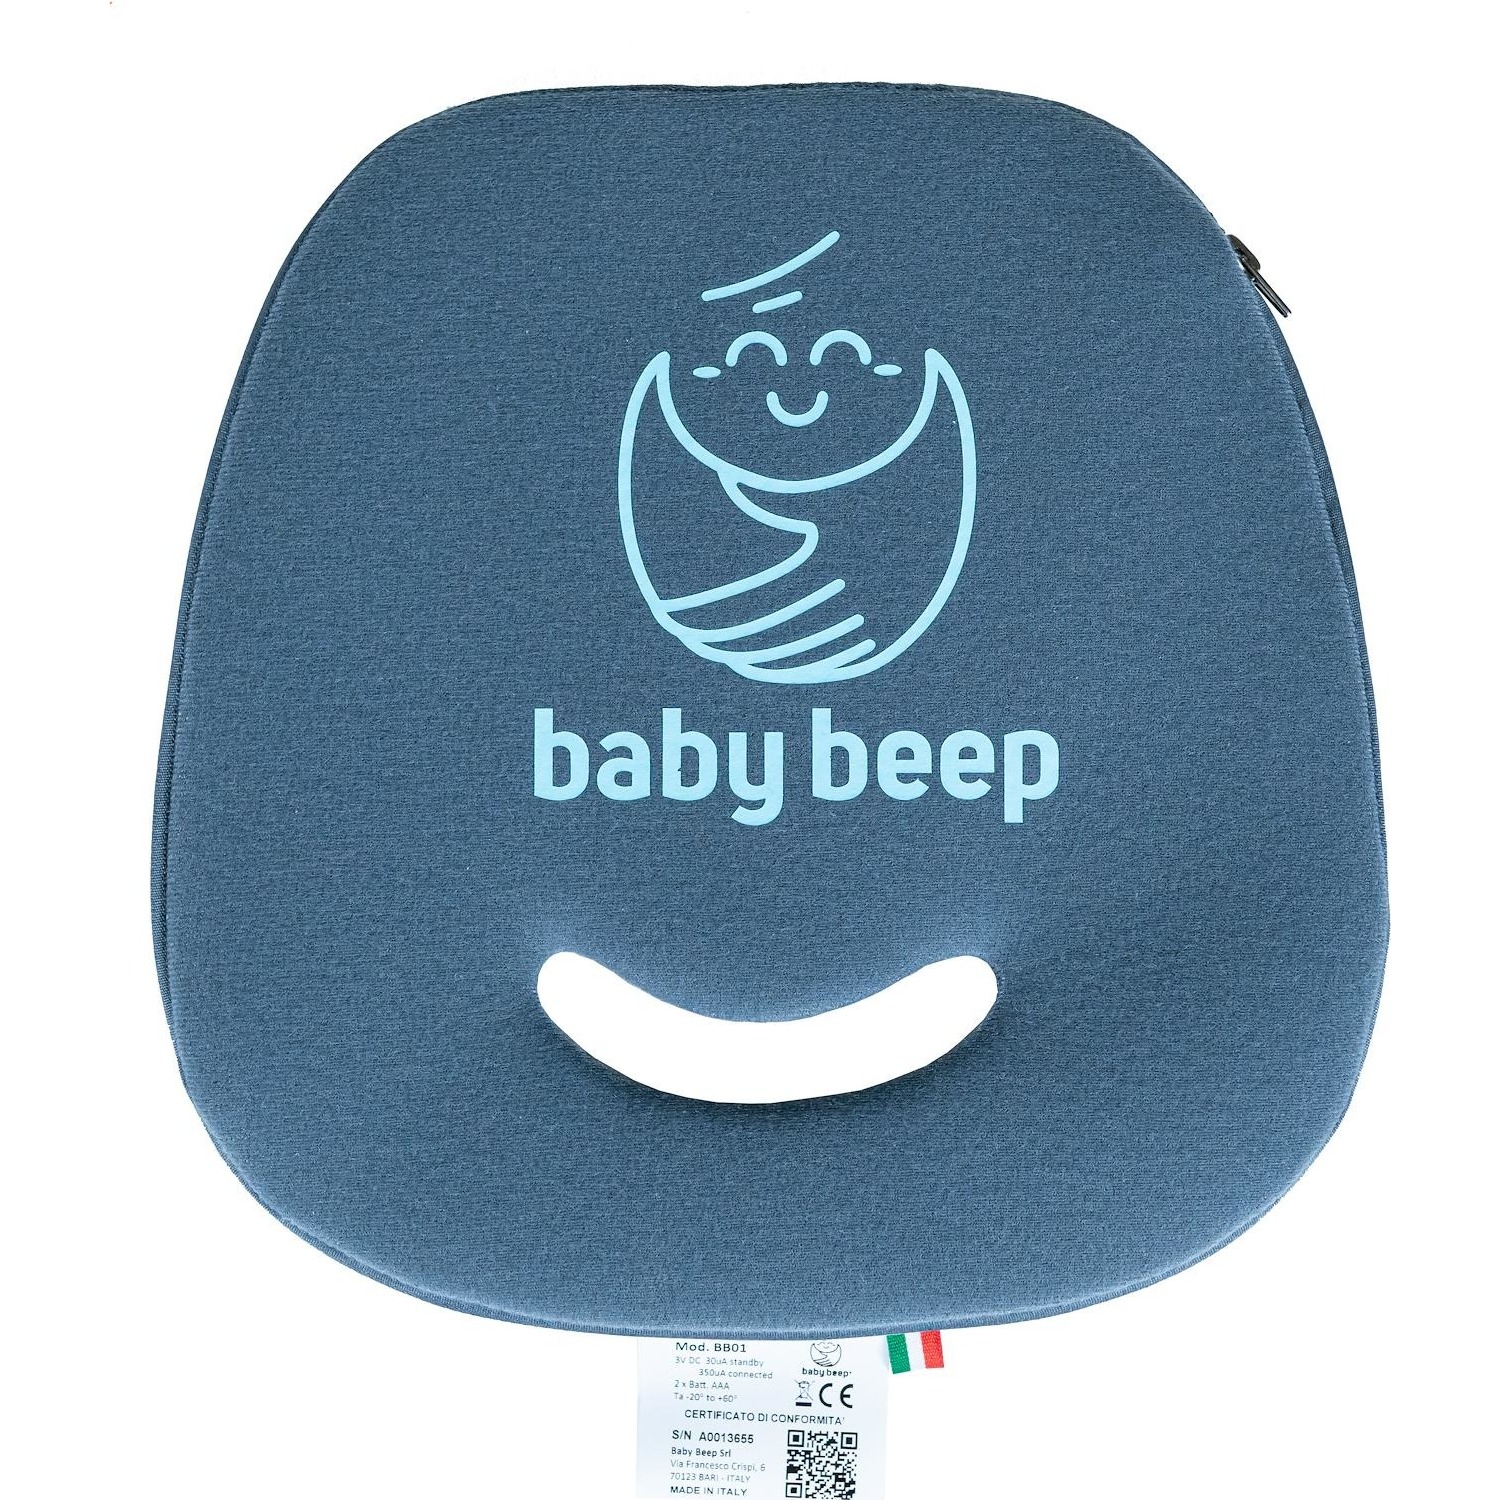 Immagine per Dispositivo antiabbandono per bambini Babybeep    conforme DM 2/10/19 n.122 protezione bambini da DIMOStore